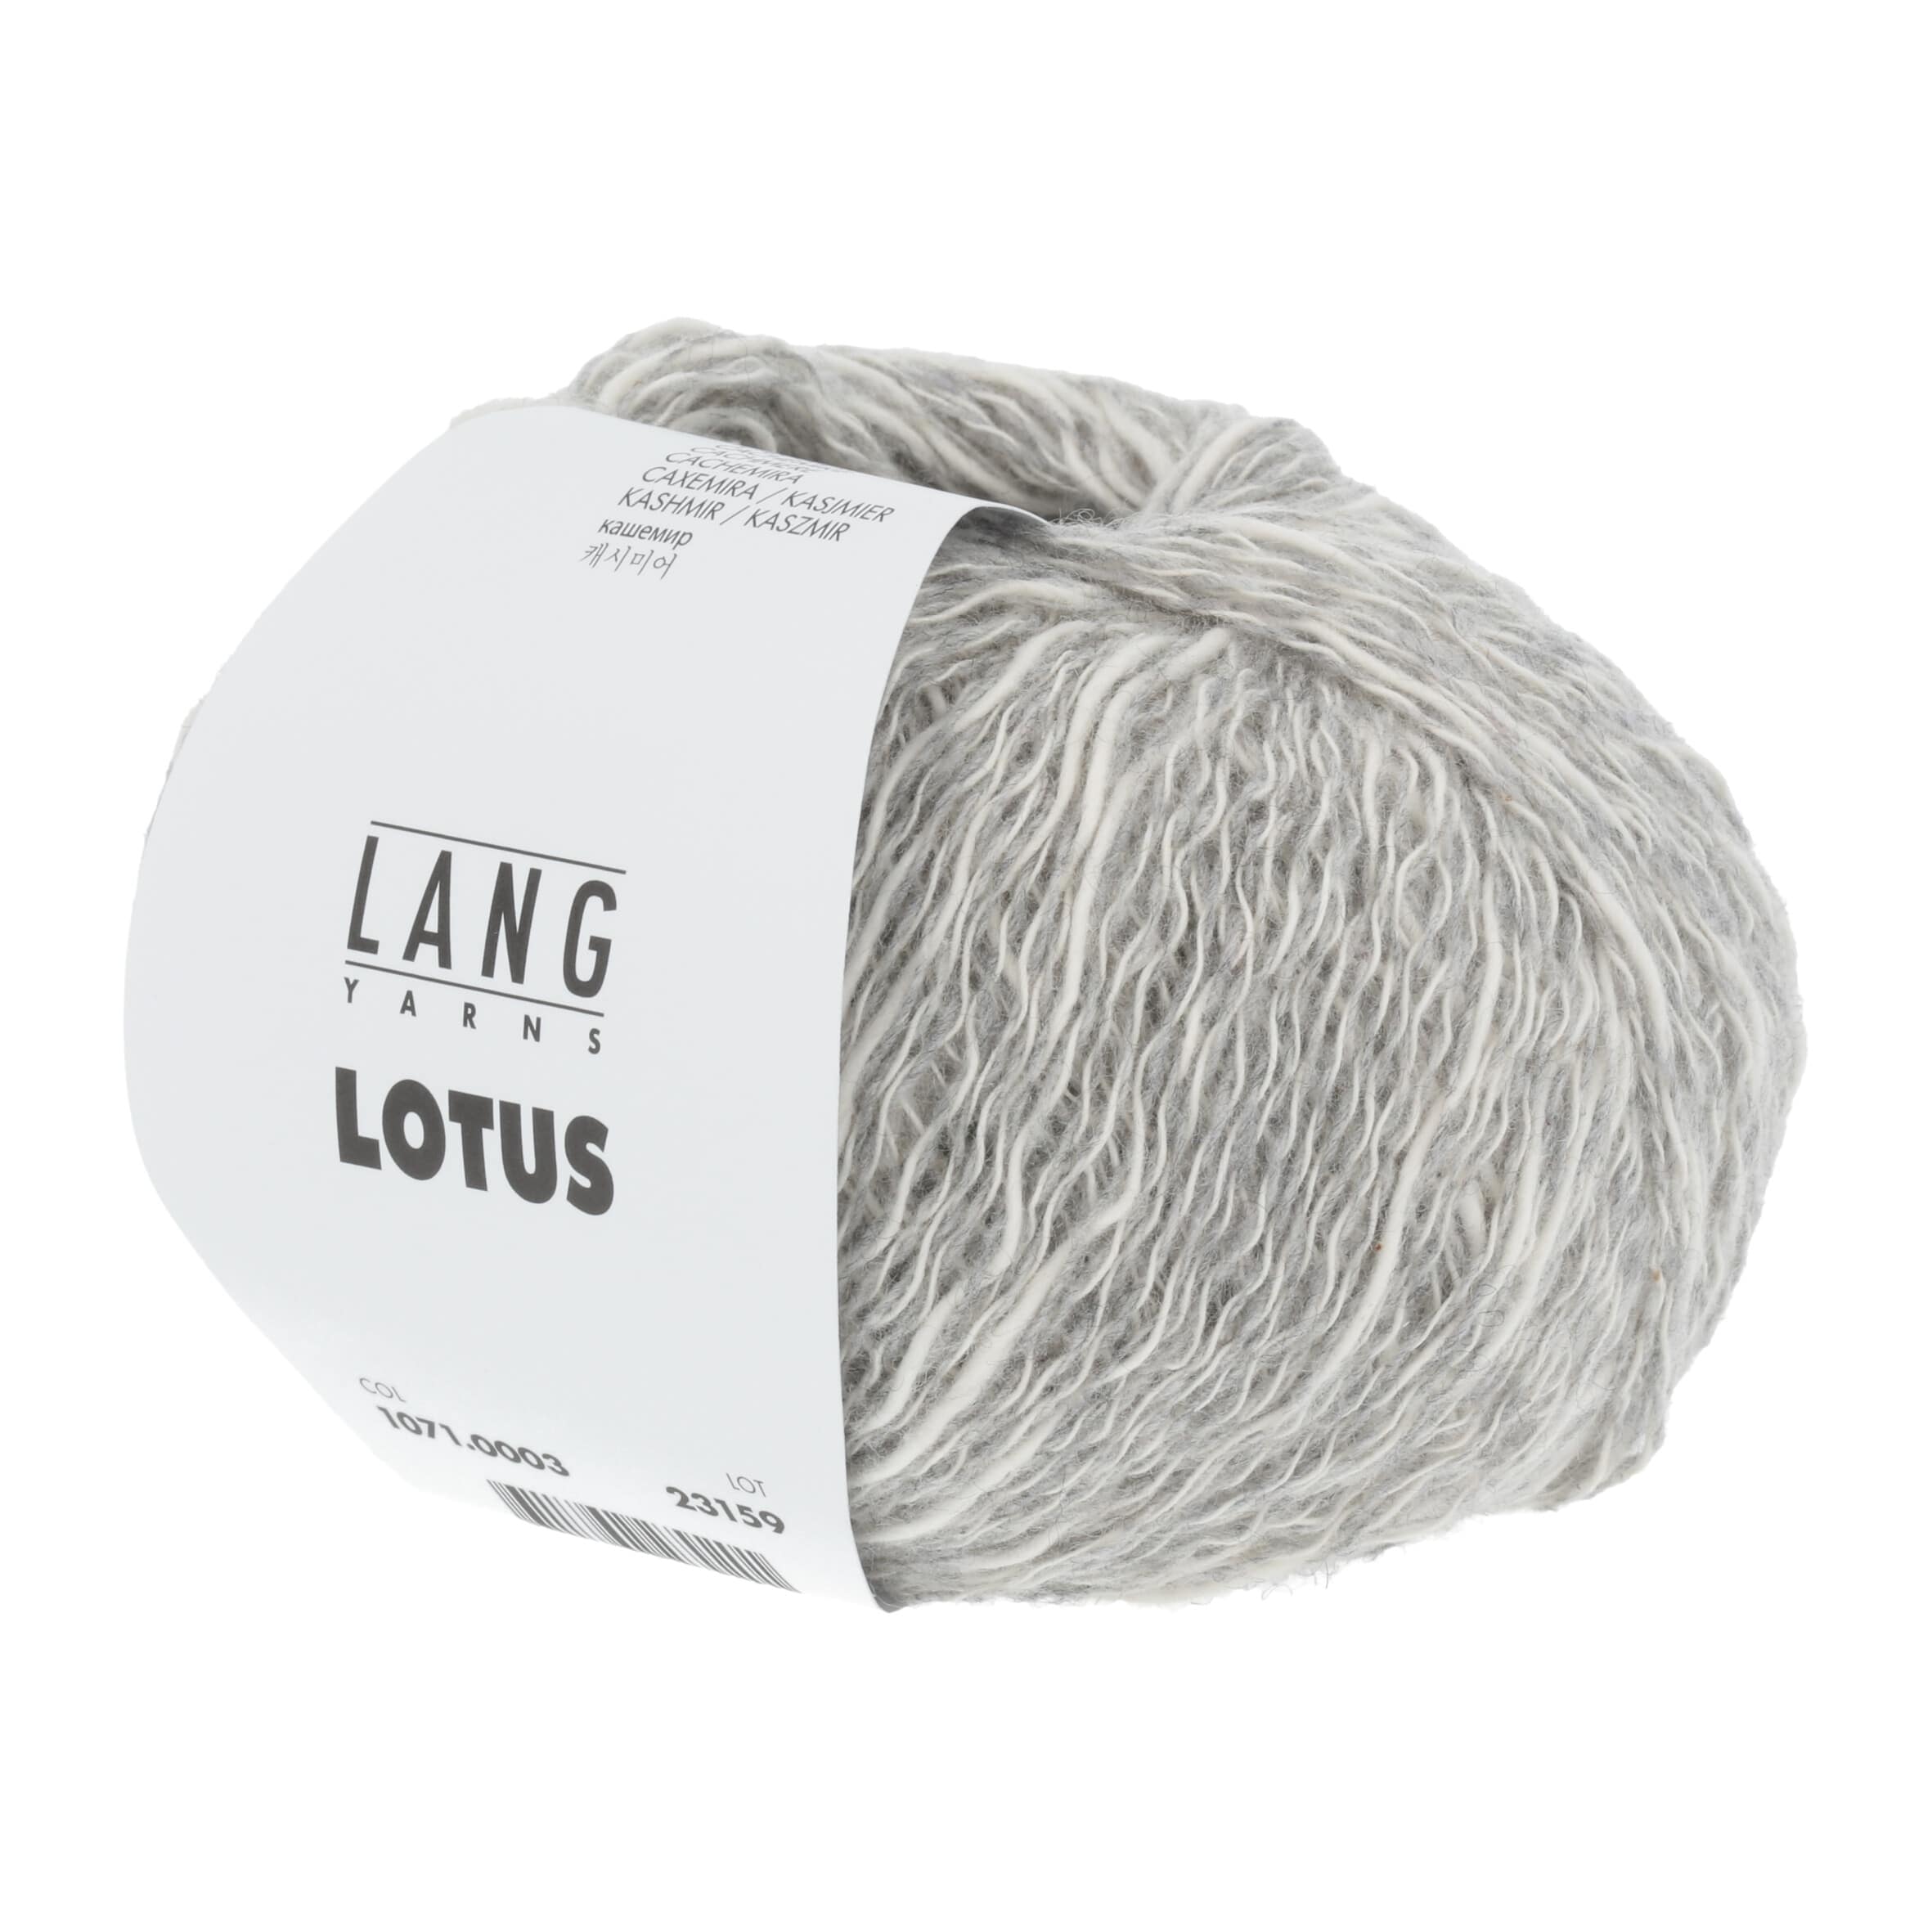 LANG Lotus